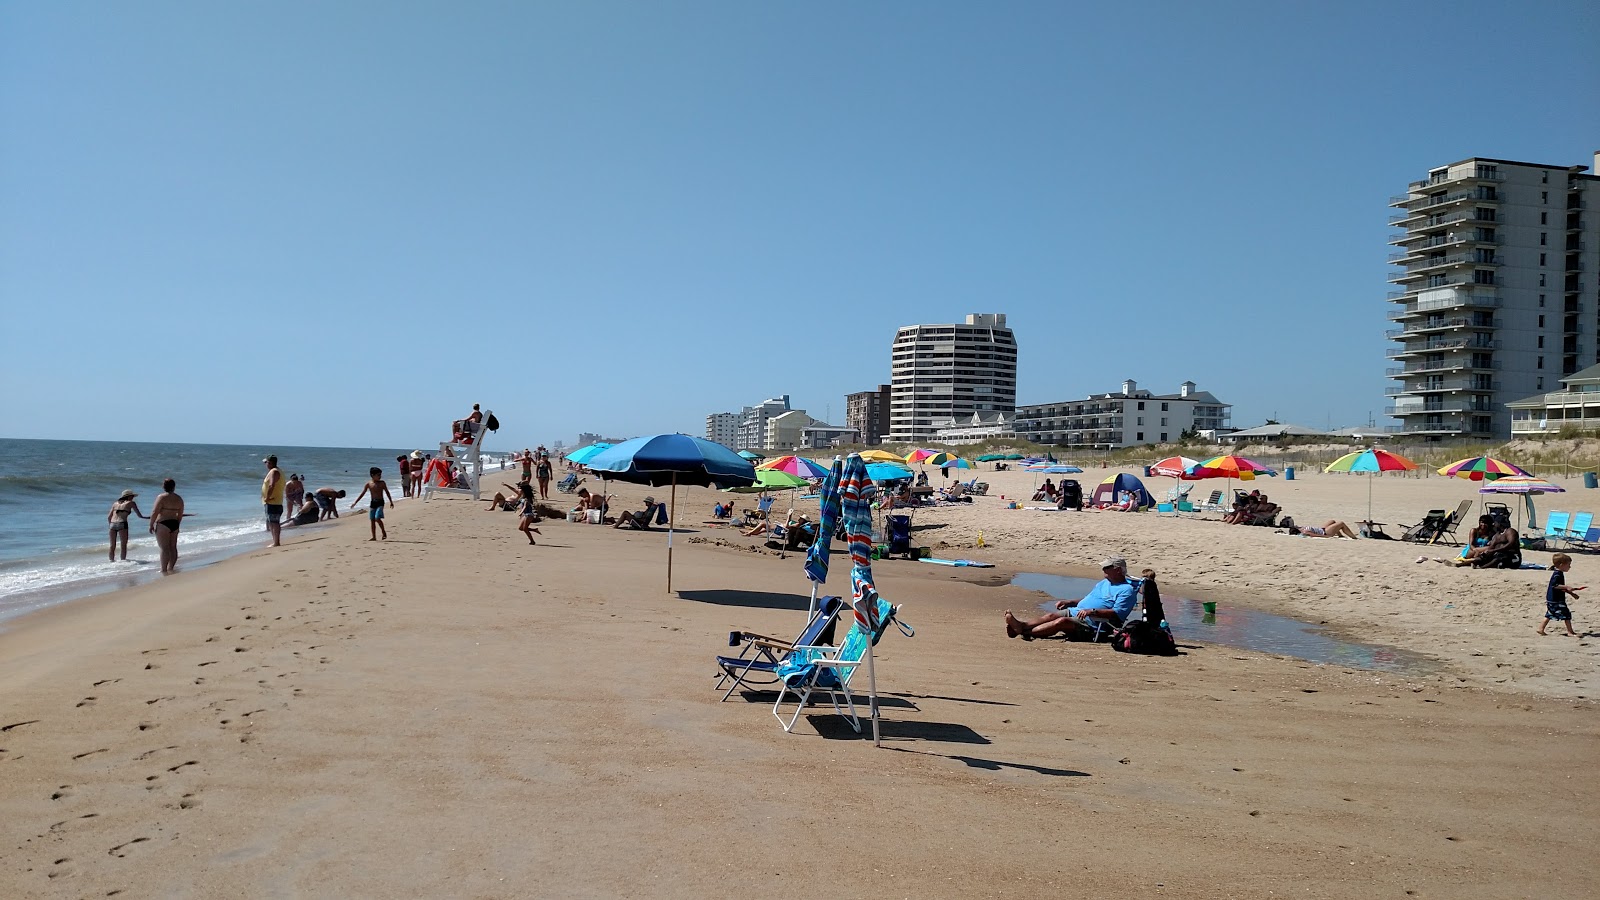 Fotografija Ocean City beach II priljubljeno mesto med poznavalci sprostitve